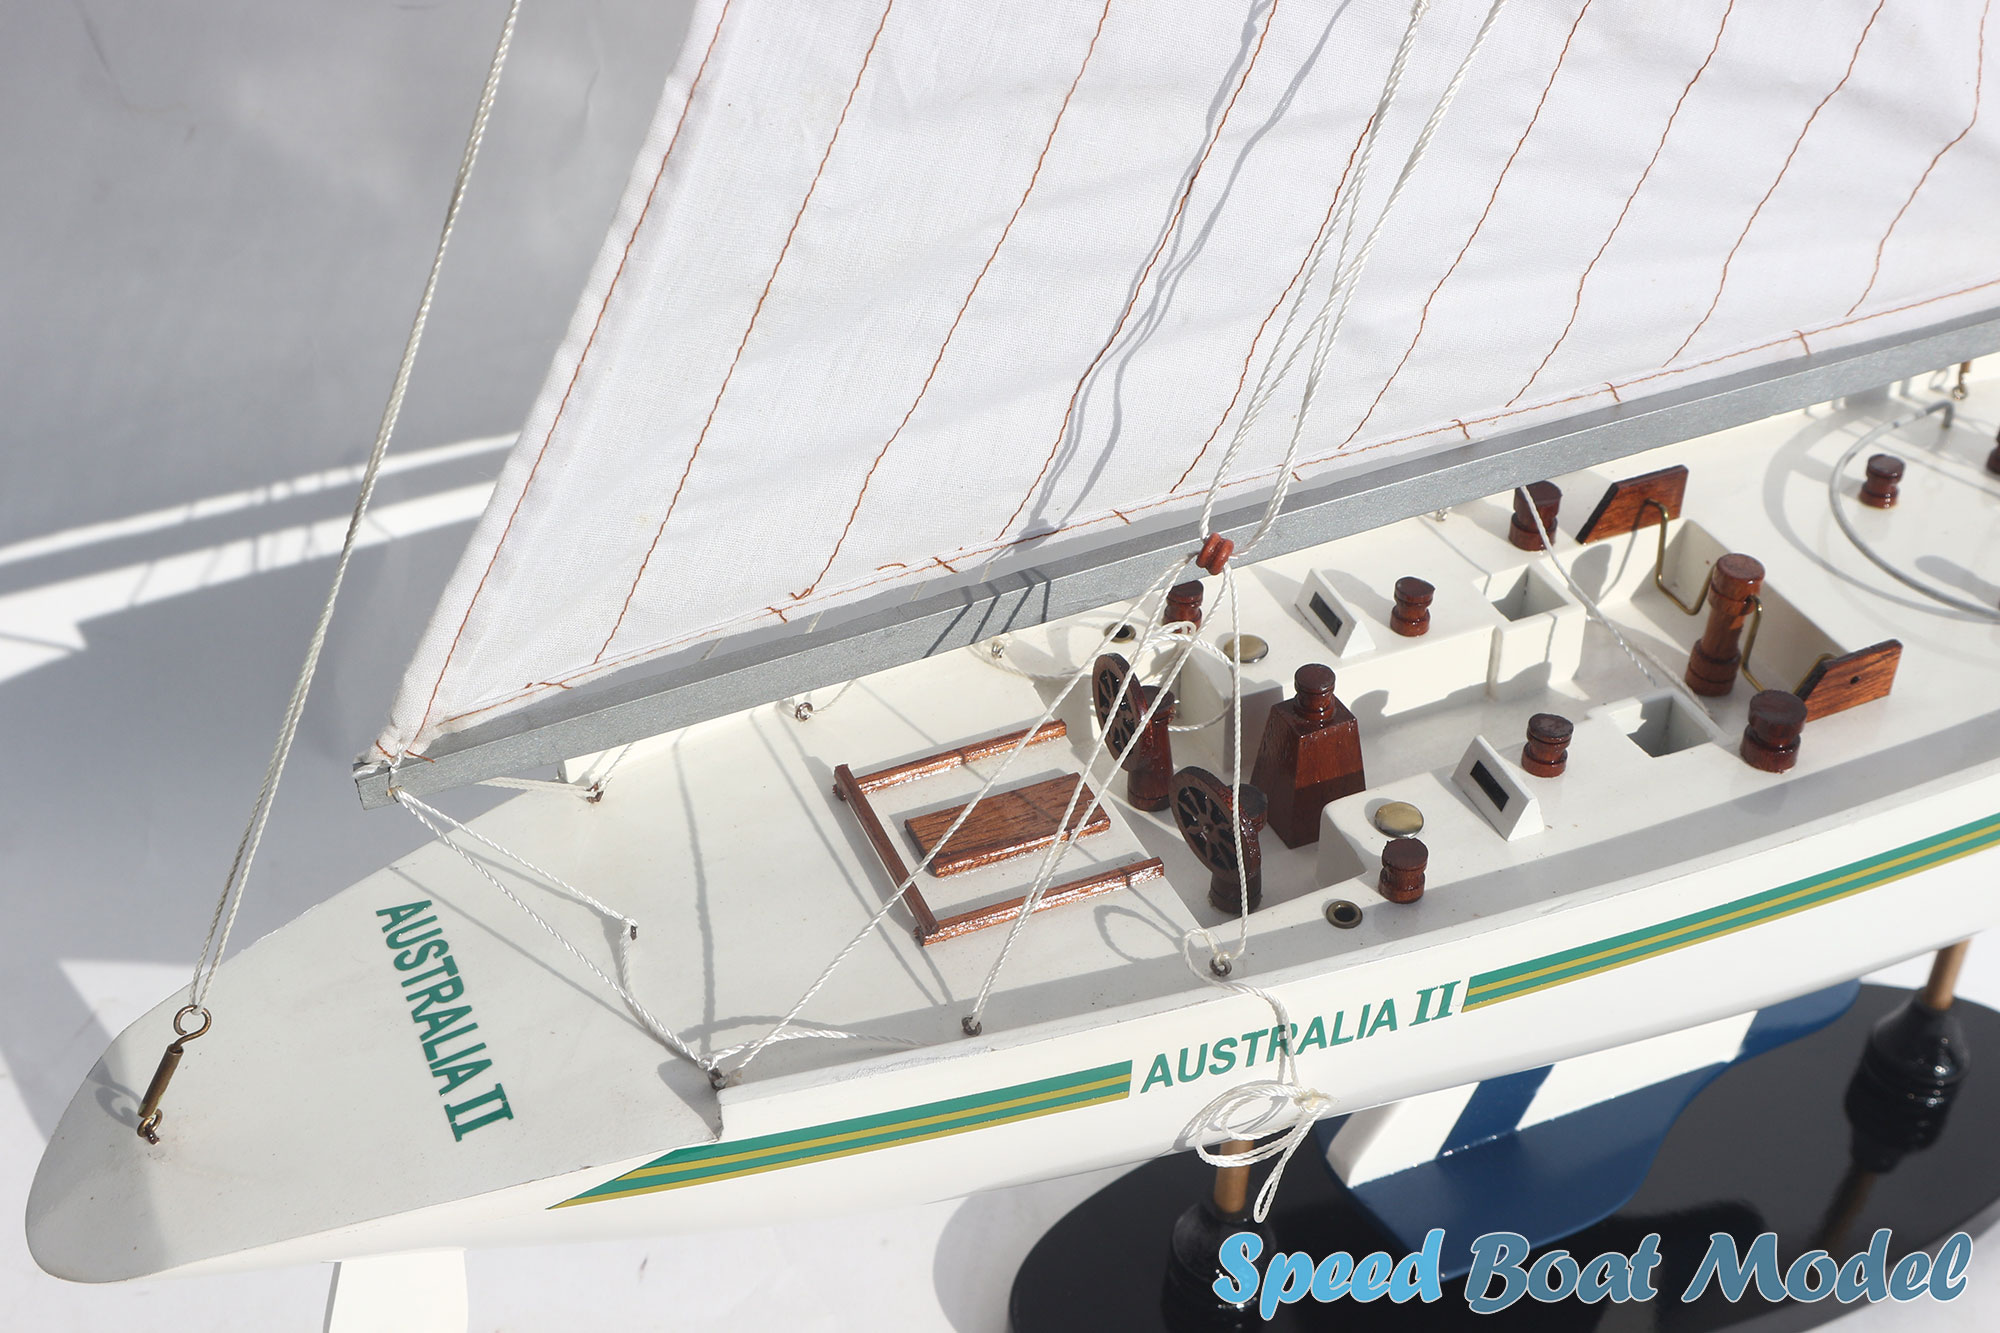 Australia II Sailing Boat Model 25.6"